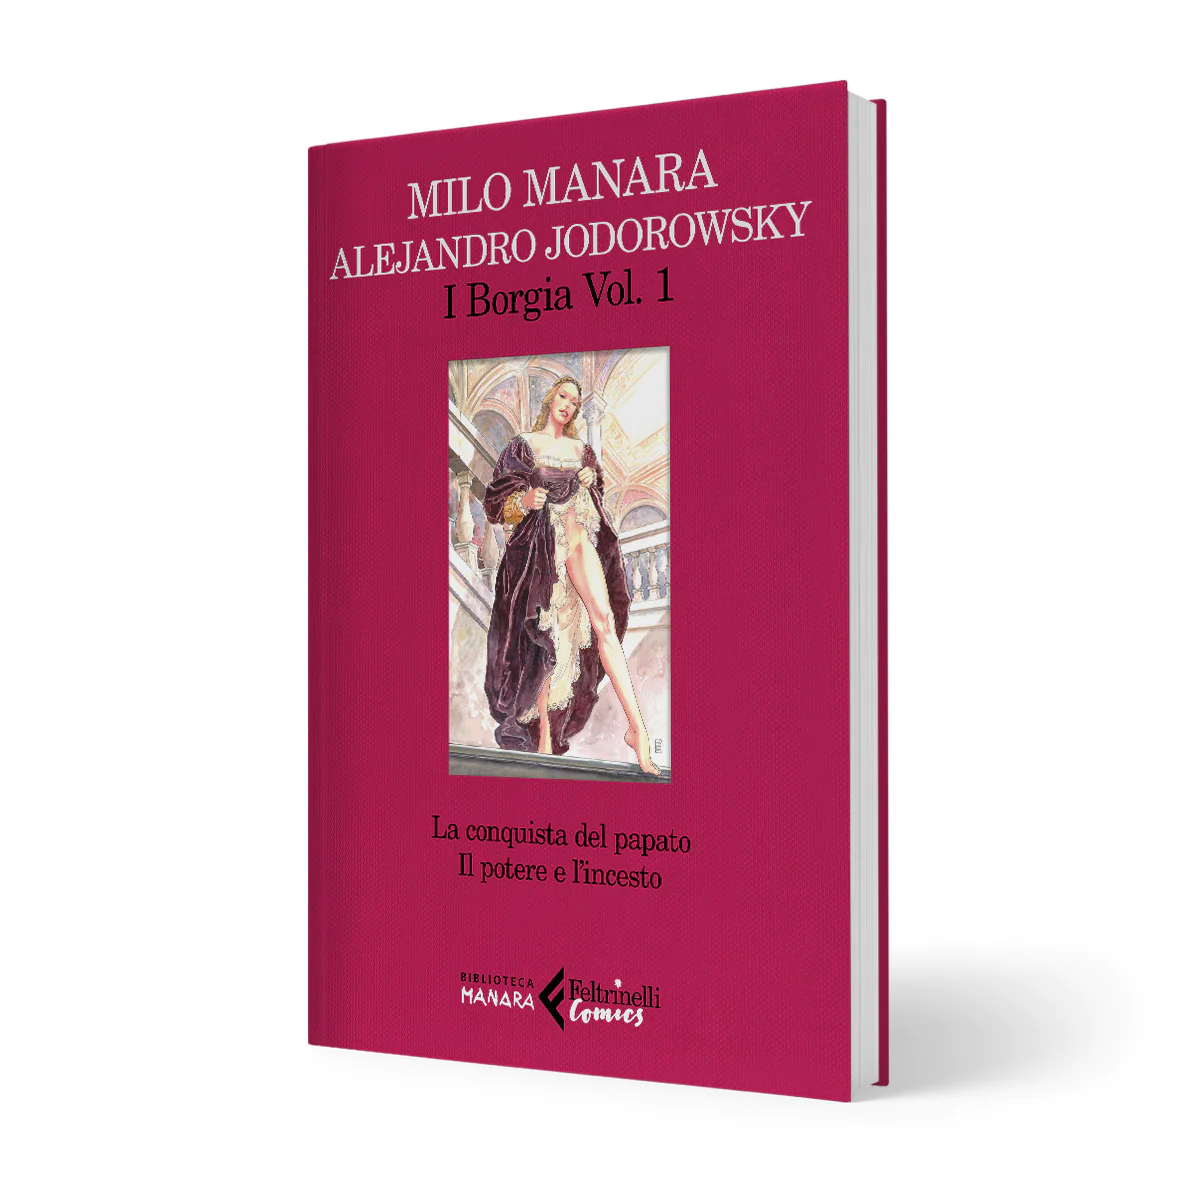 I Borgia Vol. 1 – Milo Manara